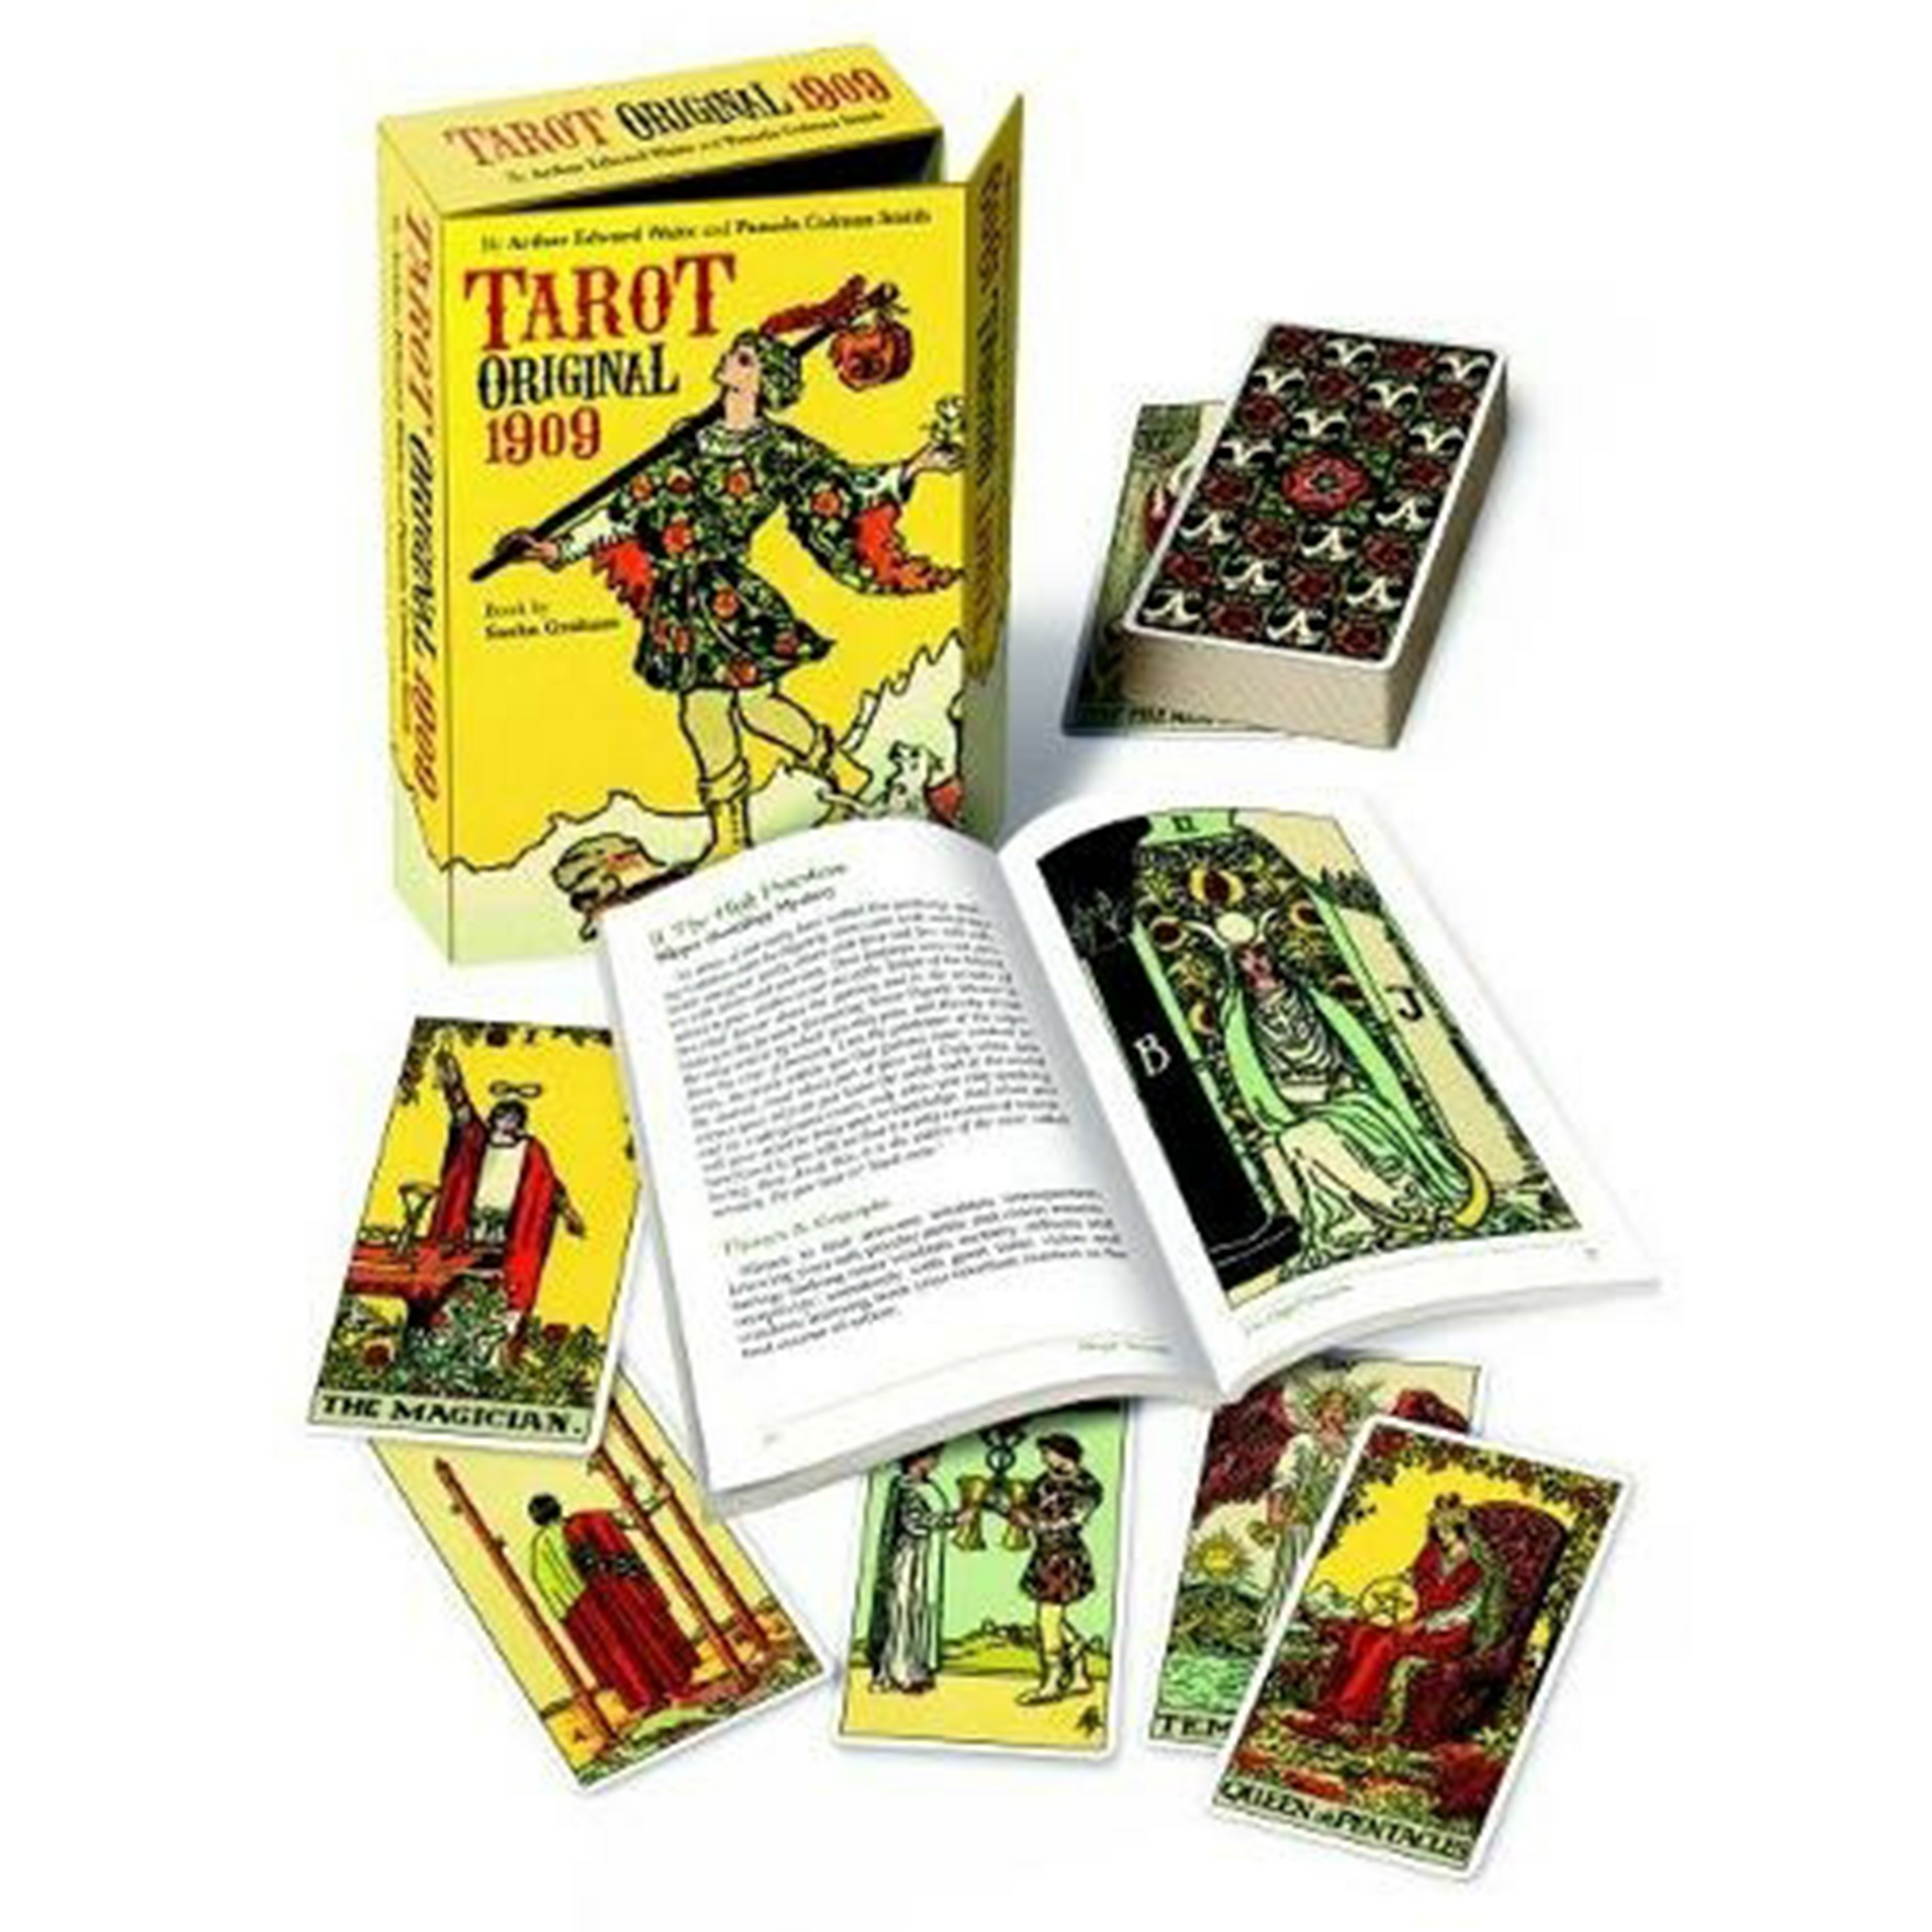 Tarot Original 1909: 78 Card Tarot Deck (Box and Contents) | Happy Piranha